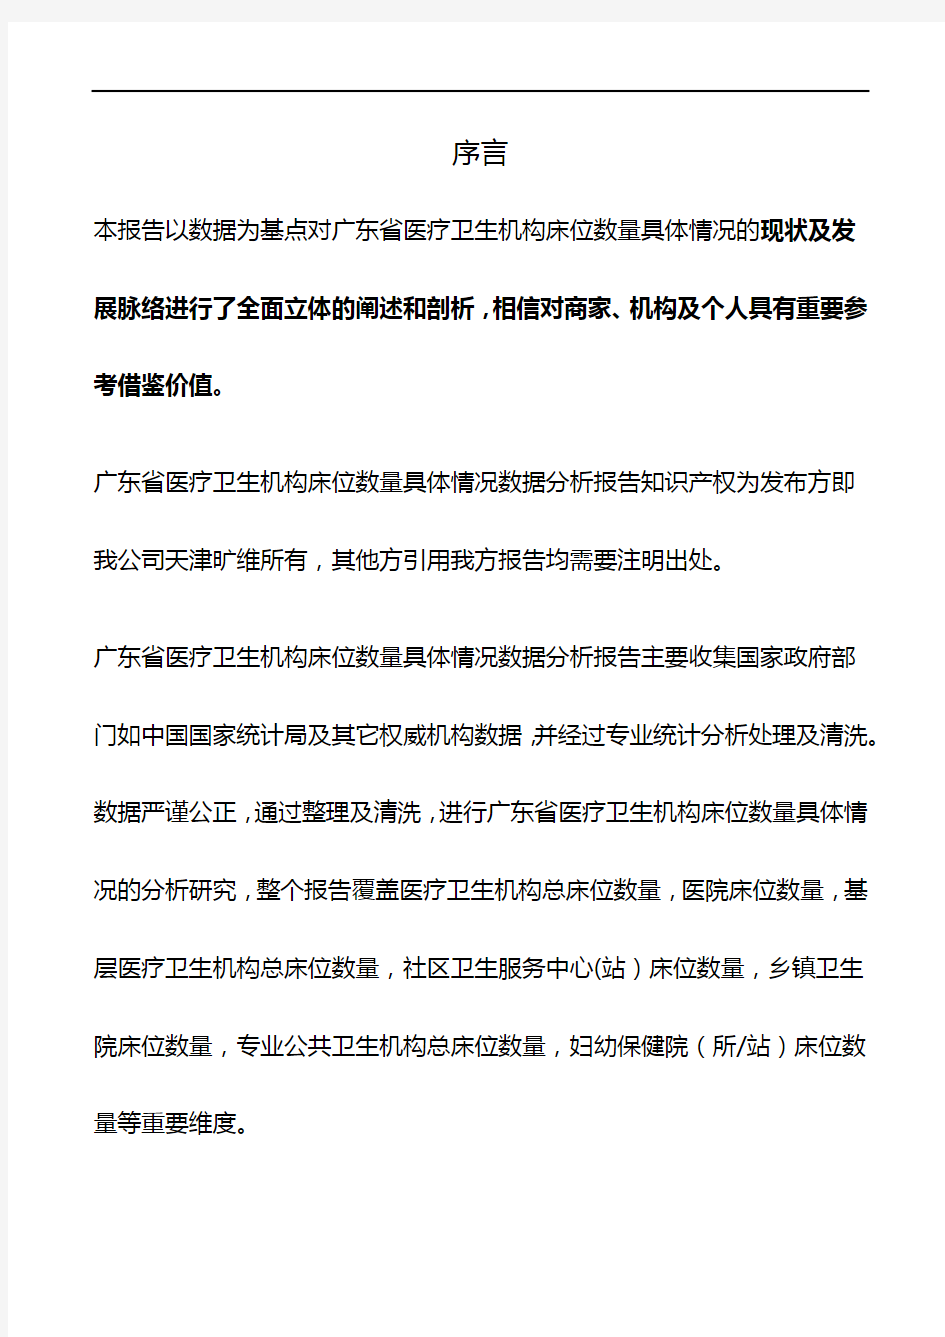 广东省医疗卫生机构床位数量具体情况3年数据分析报告2019版